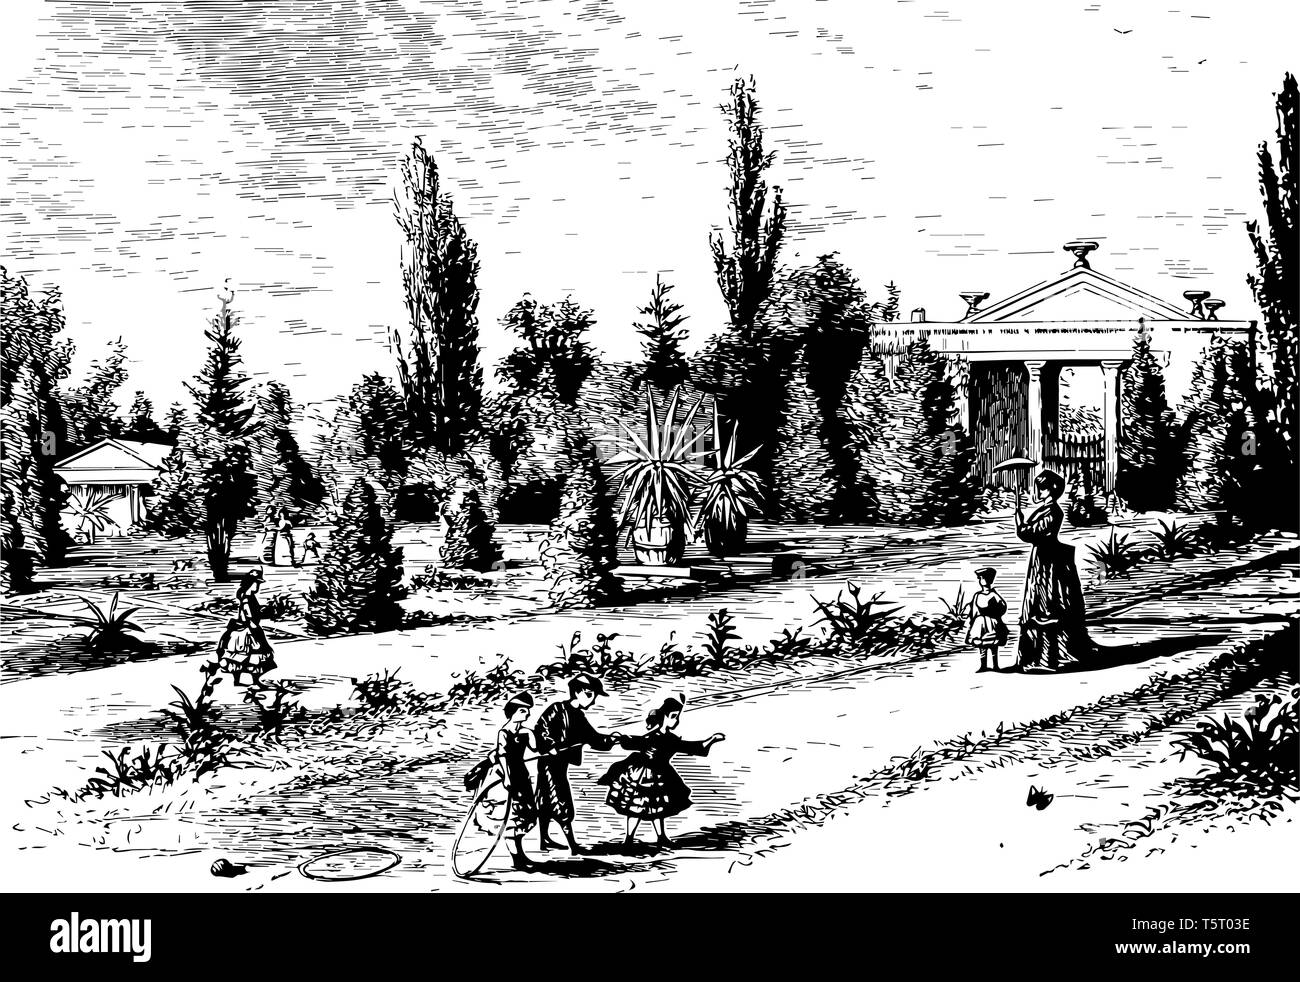 El Jardín Botánico de Missouri, fundada en 1859, es uno de los más antiguo jardín botánico también conocido como jardín Shaws línea vintage de dibujo. Ilustración del Vector